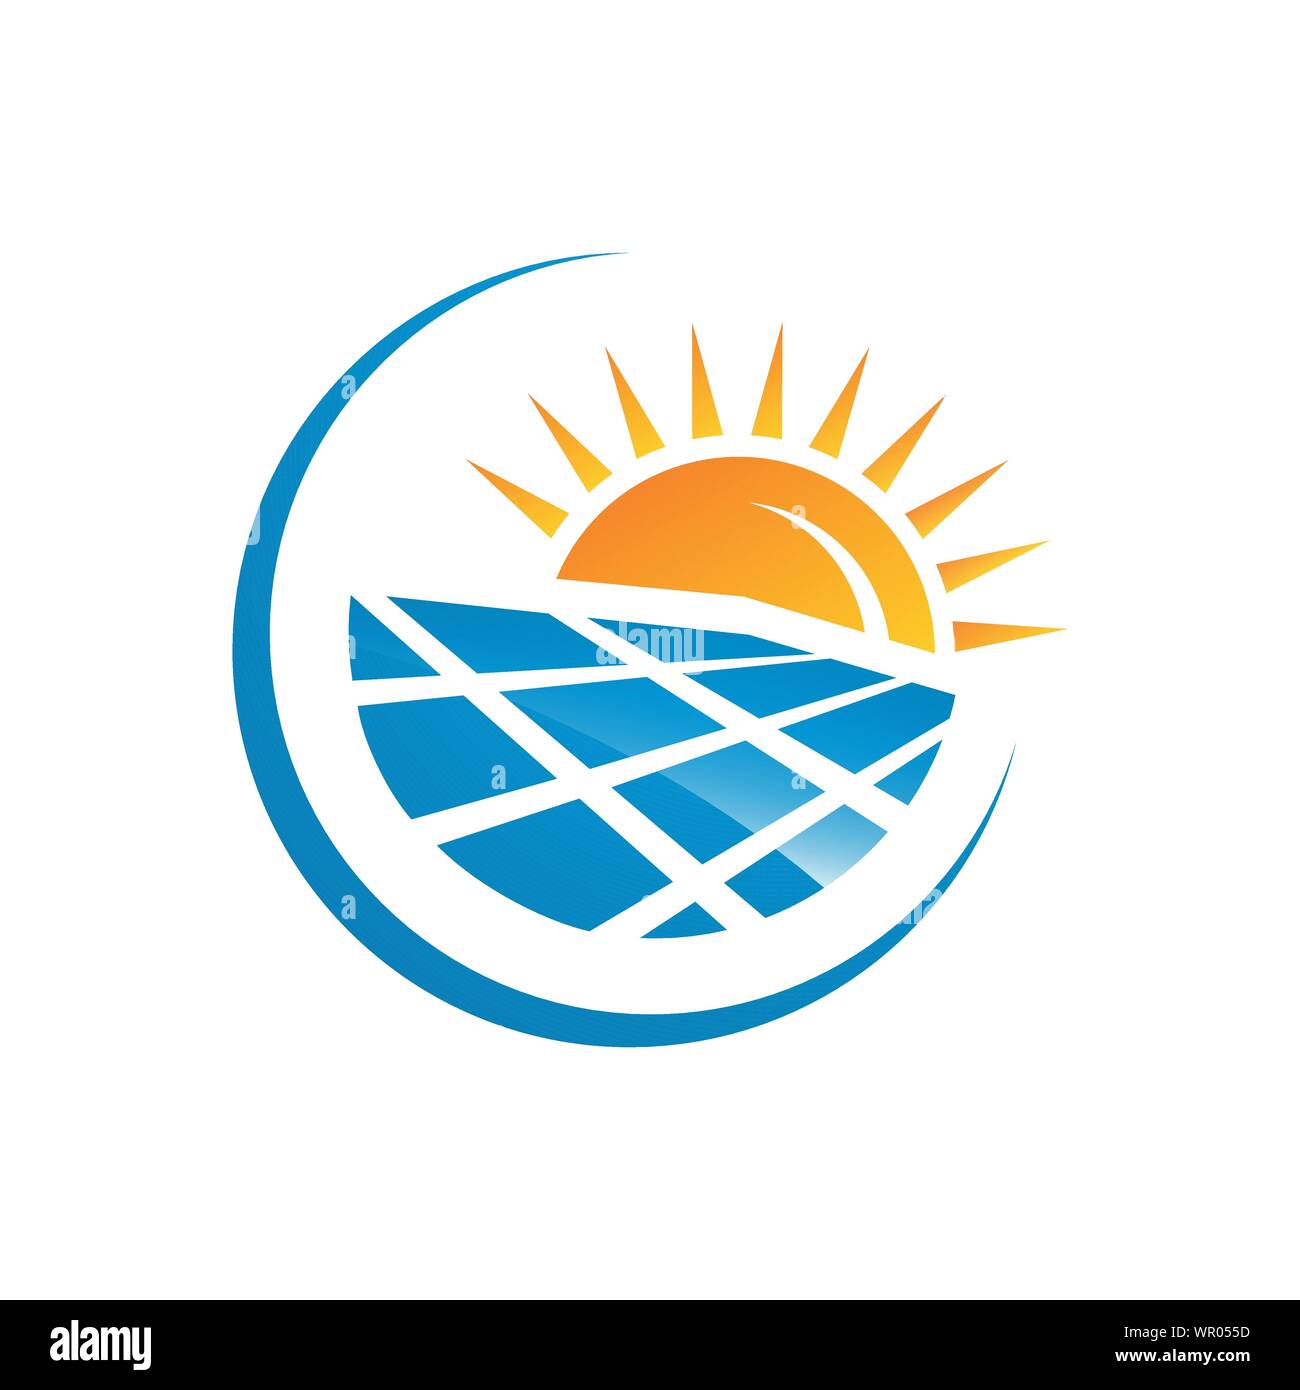 Solar logo immagini e fotografie stock ad alta risoluzione - Alamy